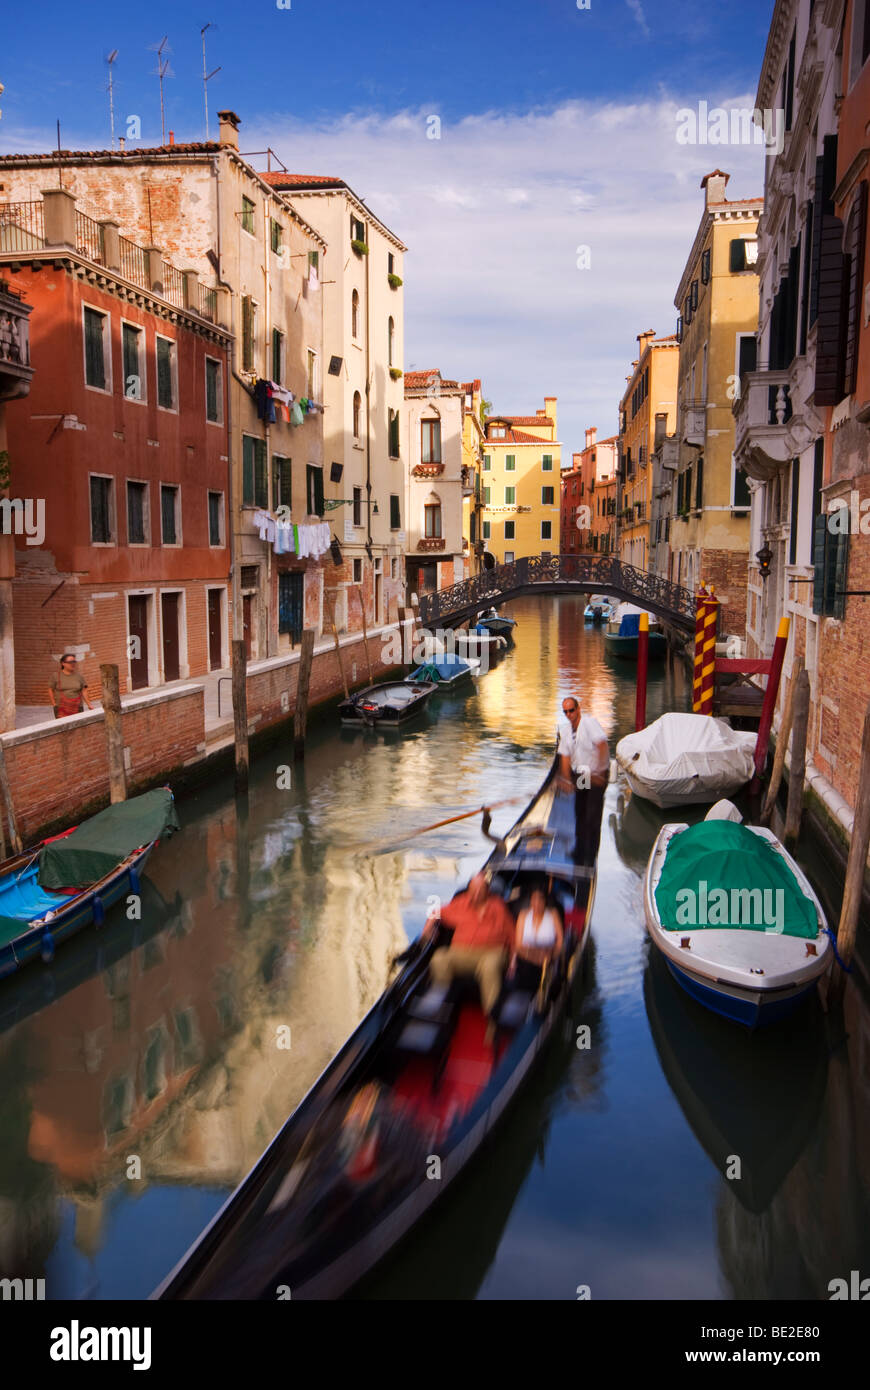 Vertikale Foto von einem venezianischen Kanal mit Touristen in einer Gondel Stockfoto